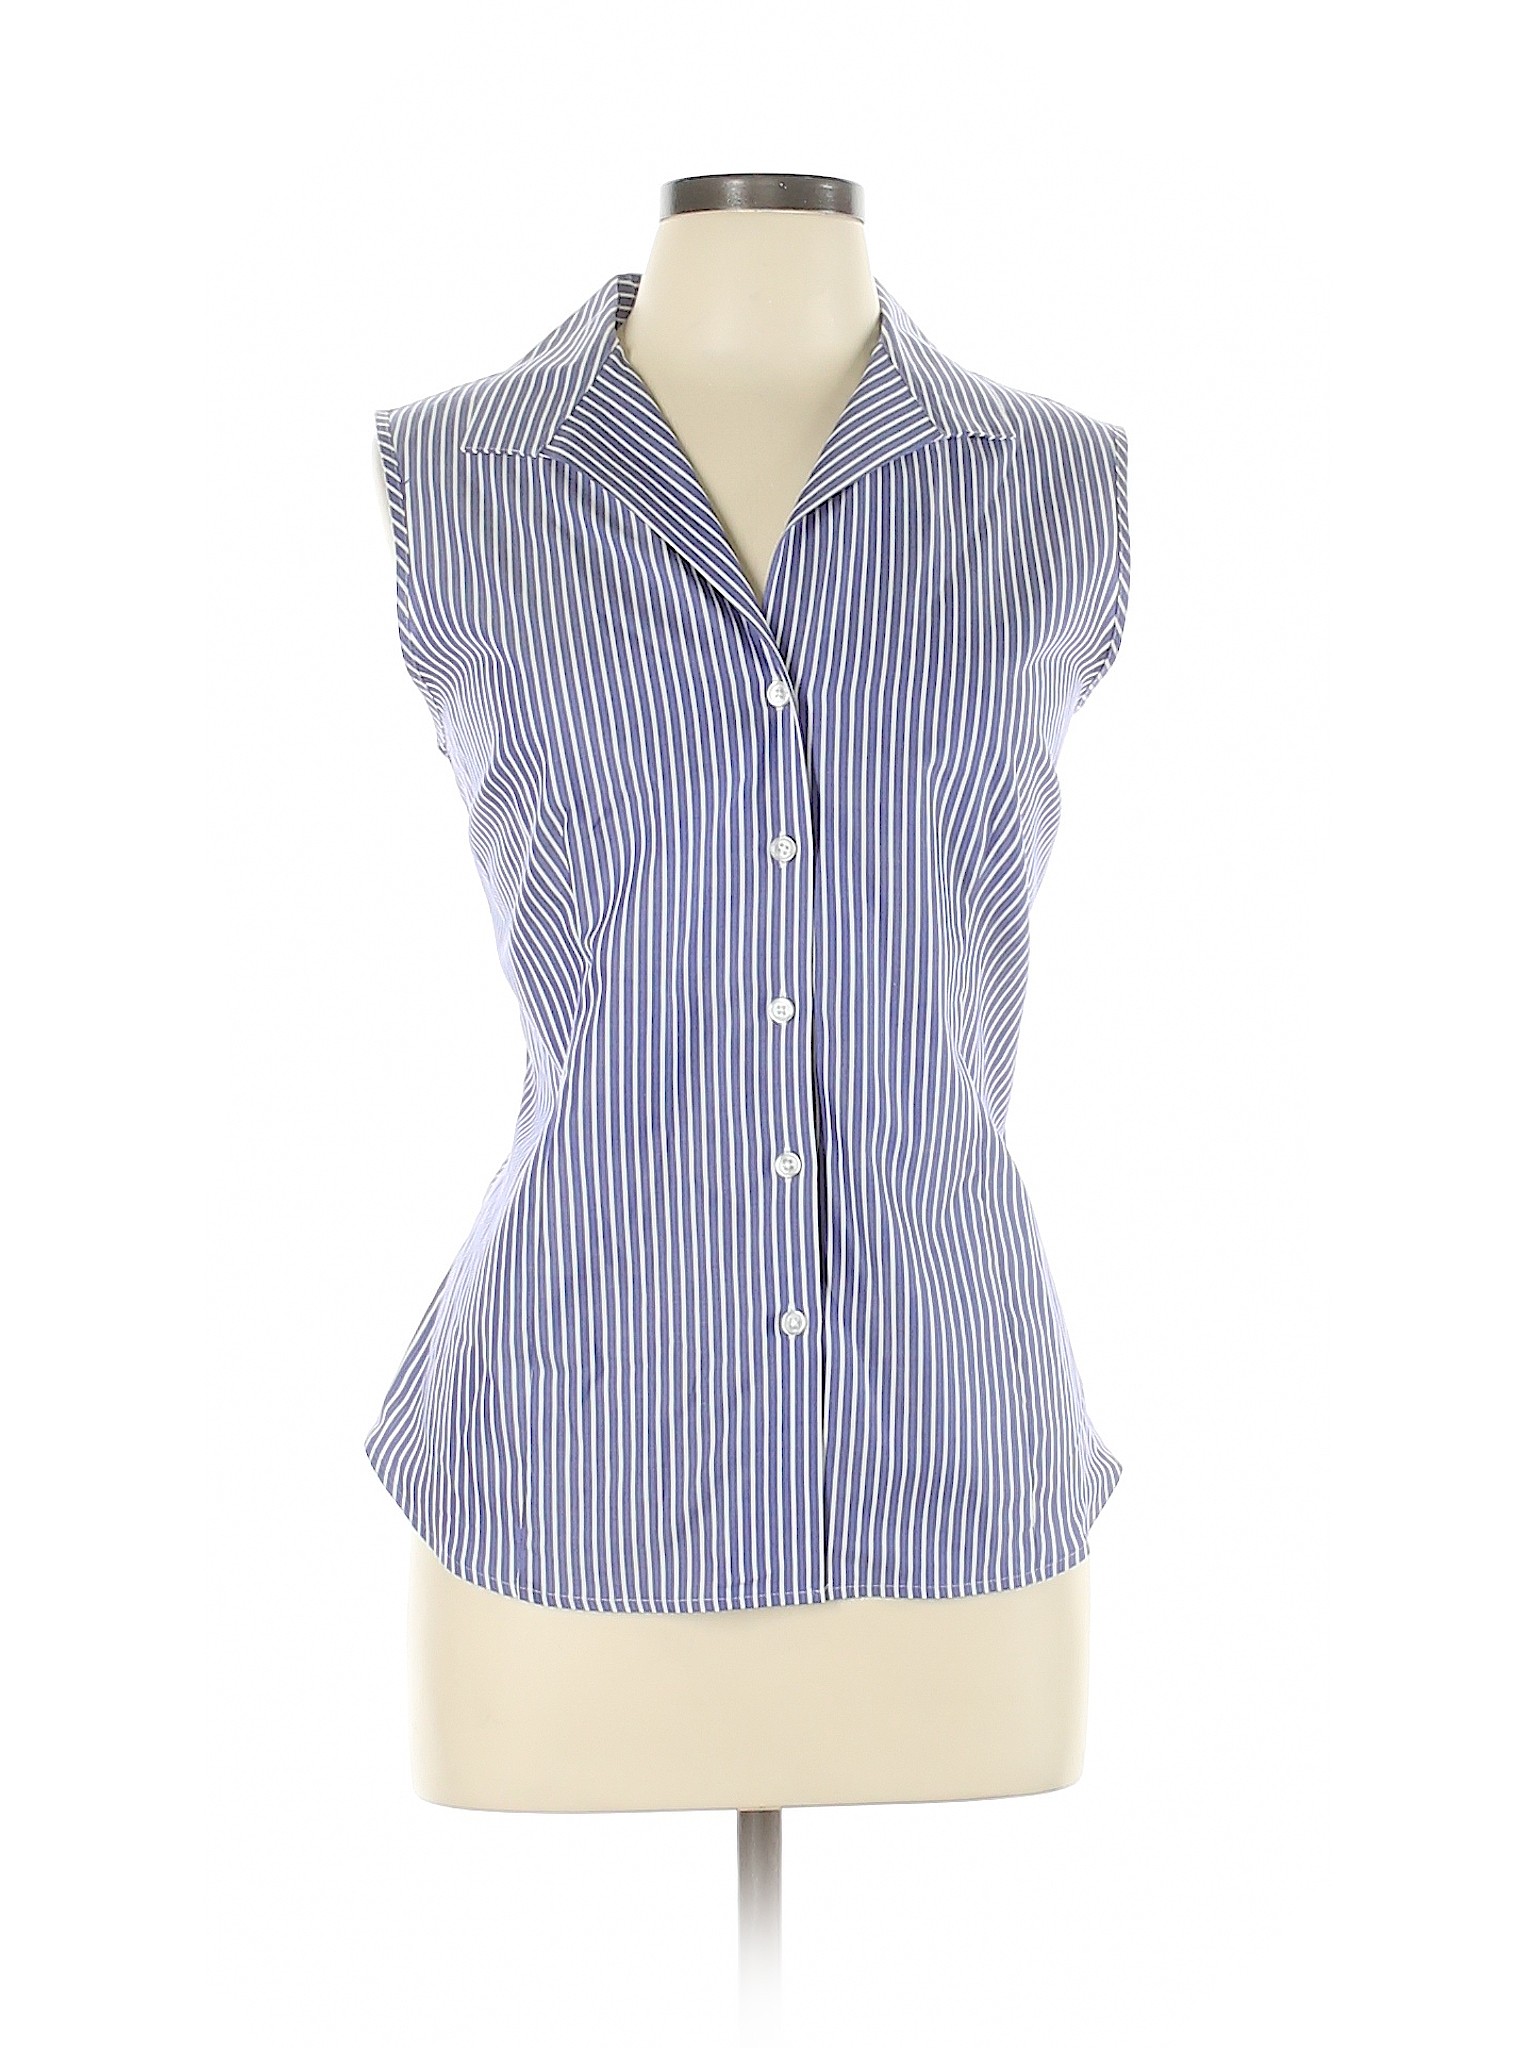 Jones New York Signature Women Blue Sleeveless Button-Down Shirt L | eBay